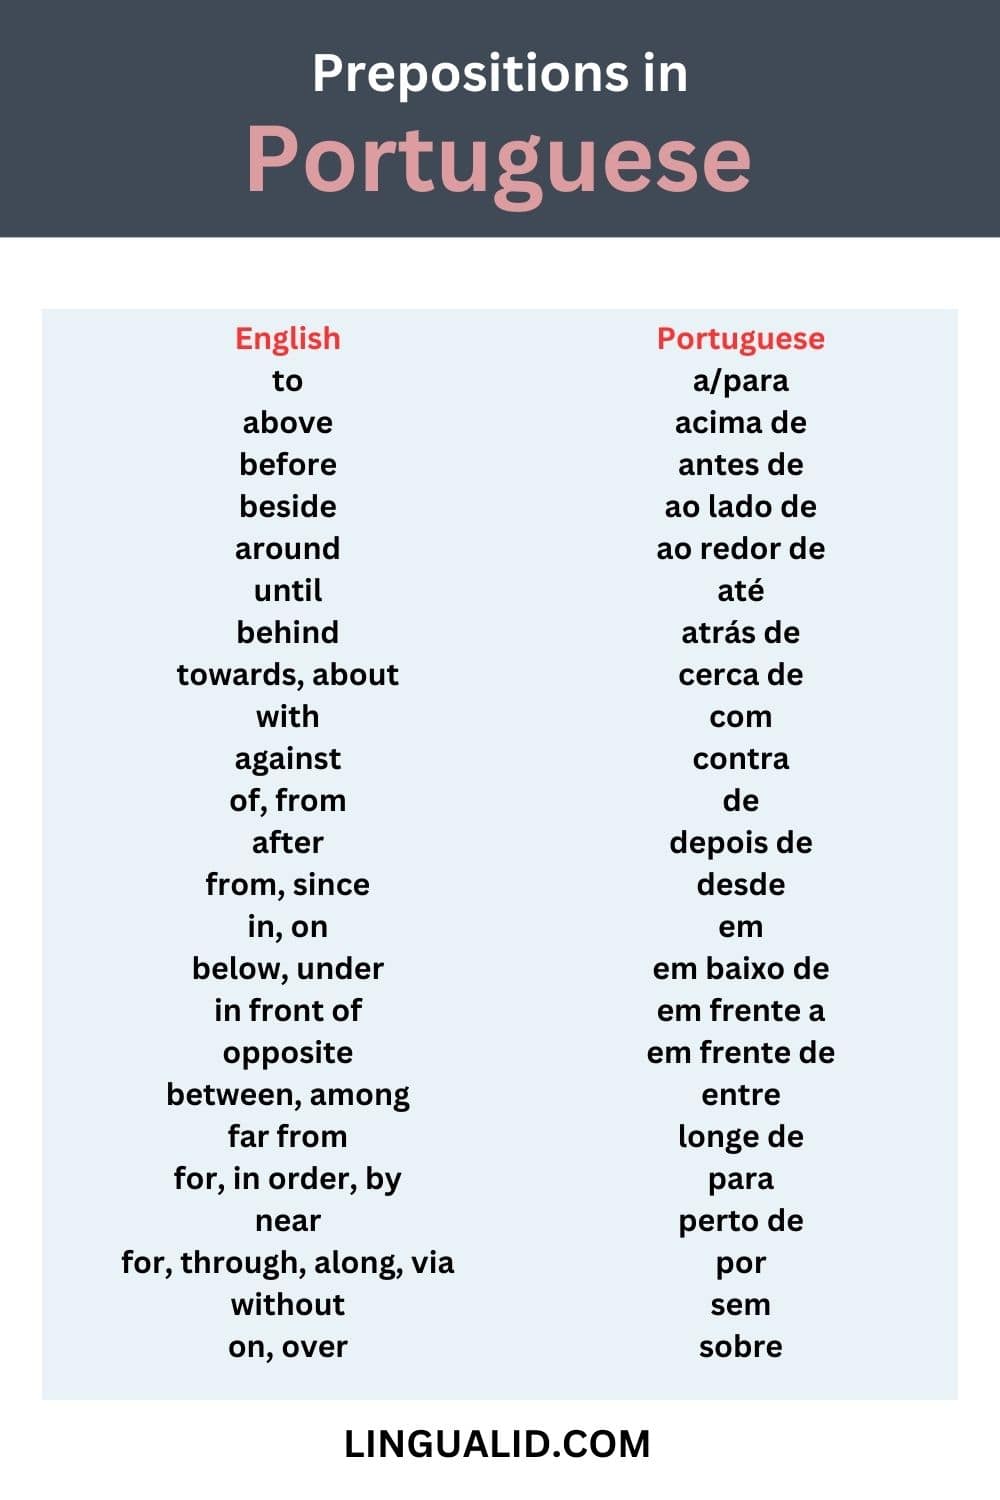 Portuguese Prepositions